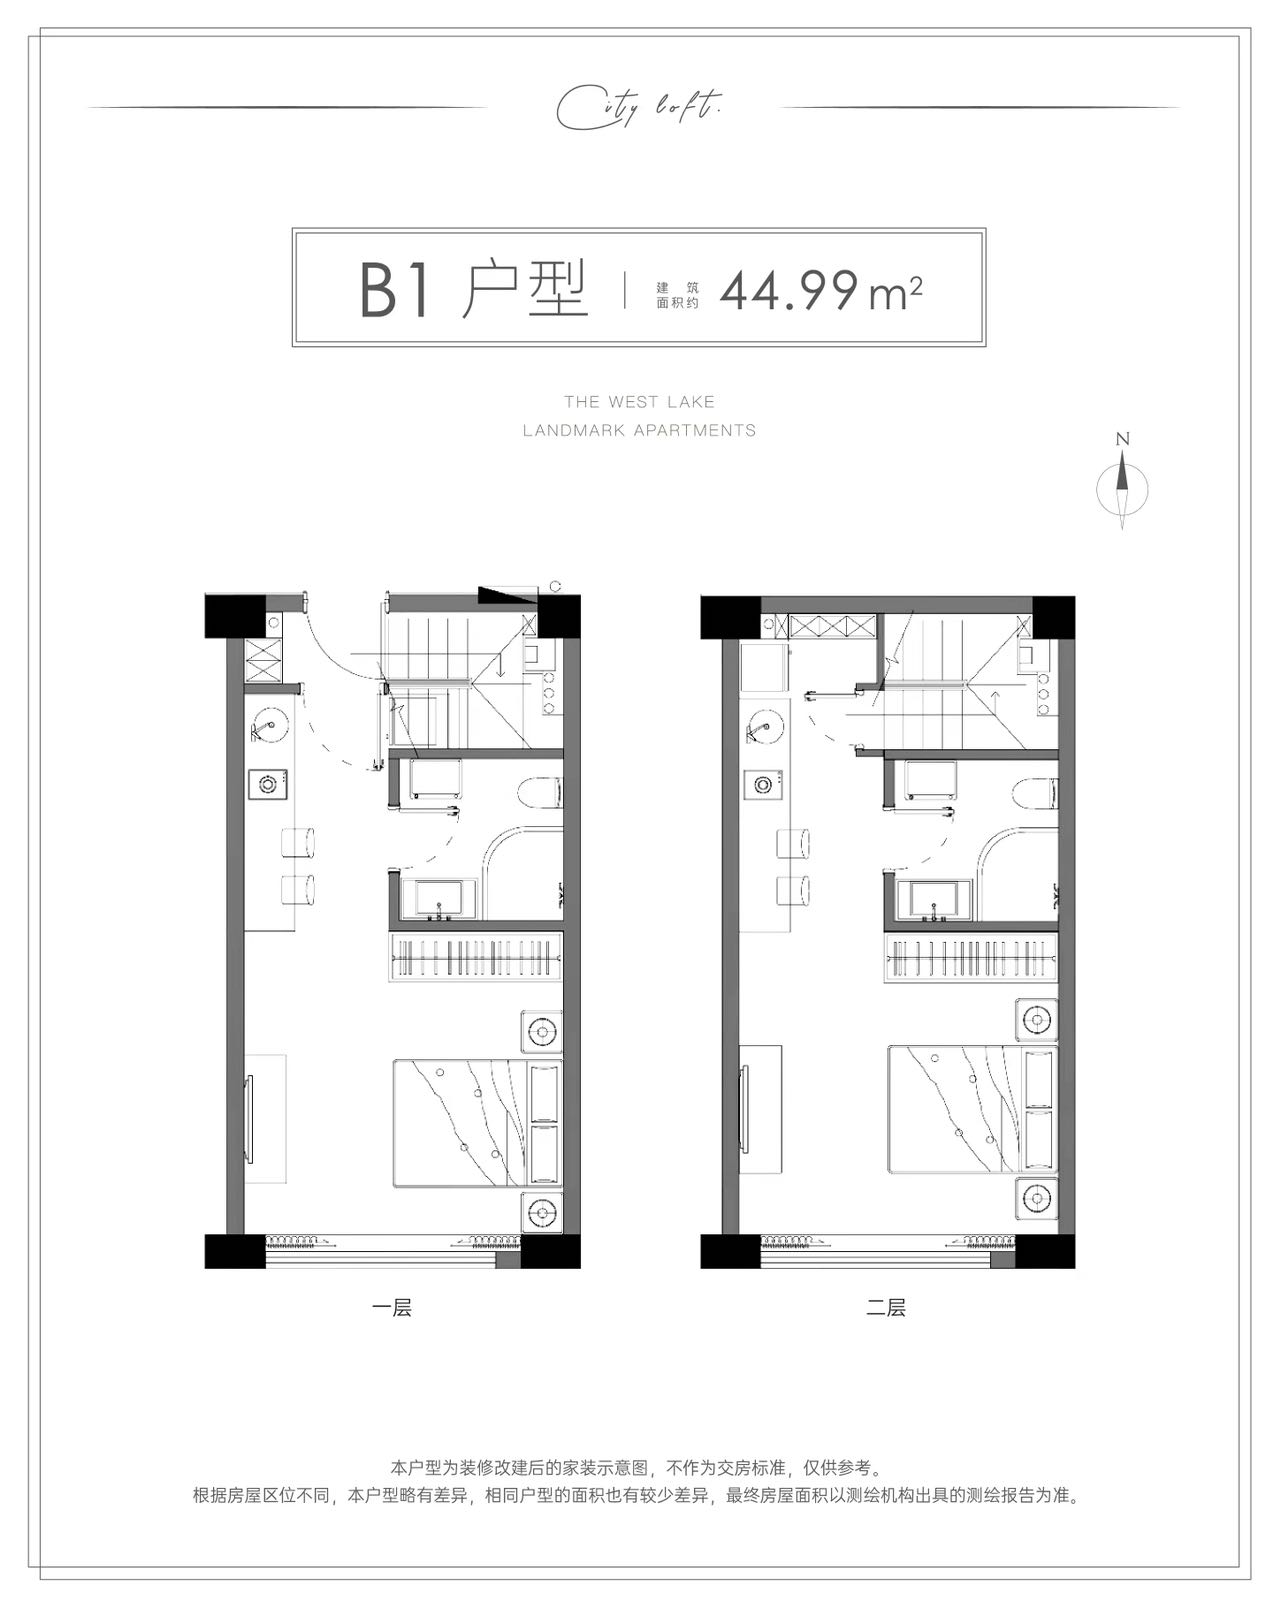 华海园三期公寓户型,B1 LOFT 双钥匙